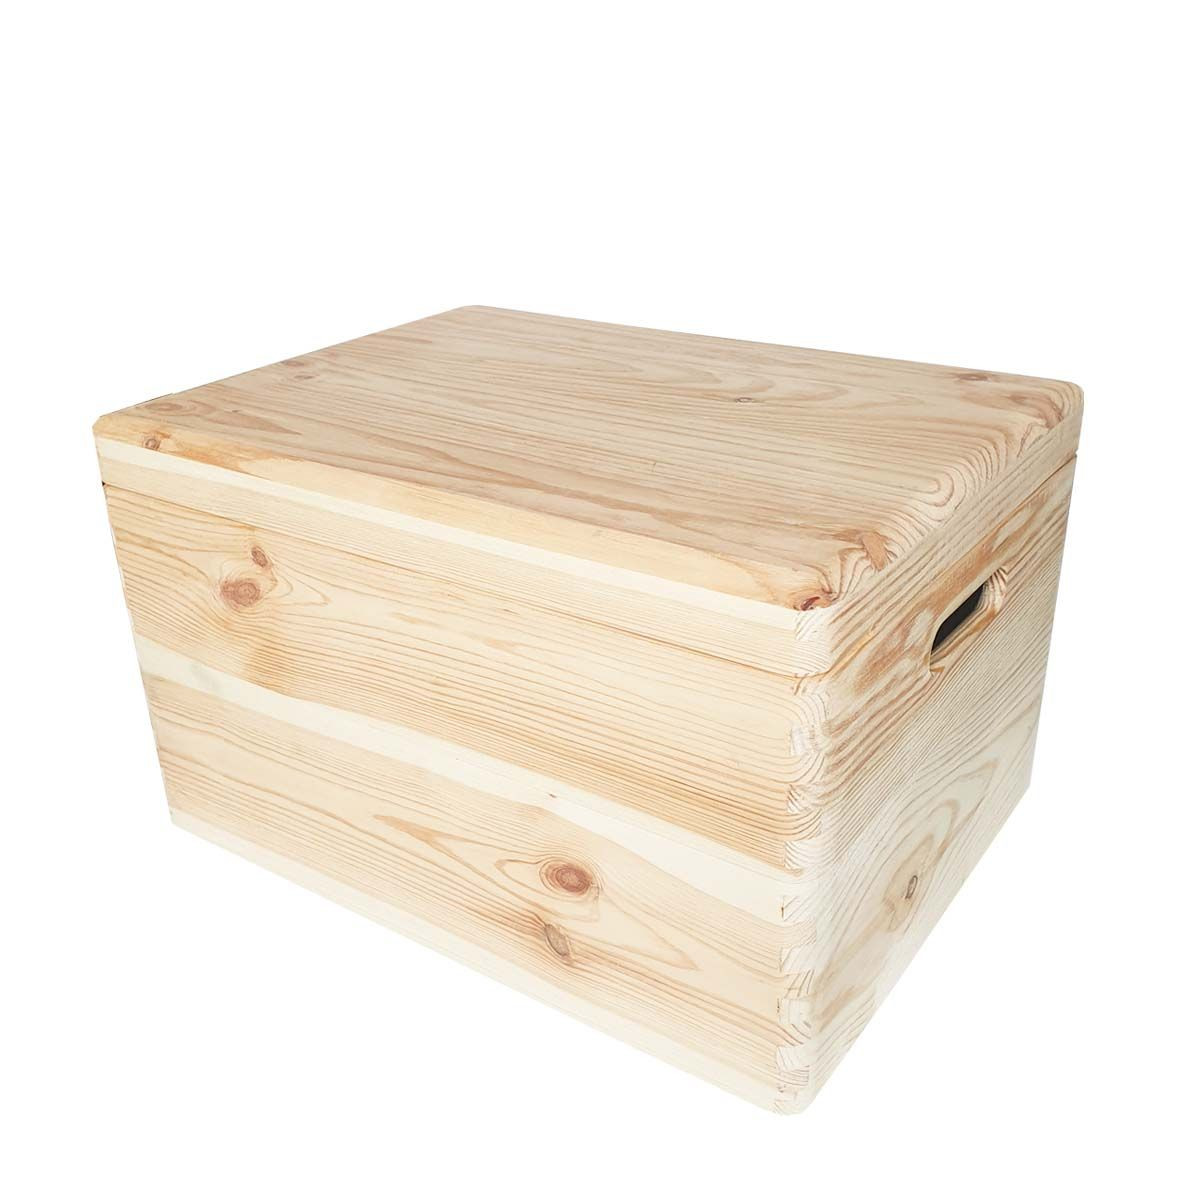 Boite bois, petite boite en bois, boite rangement en bois, splif box.